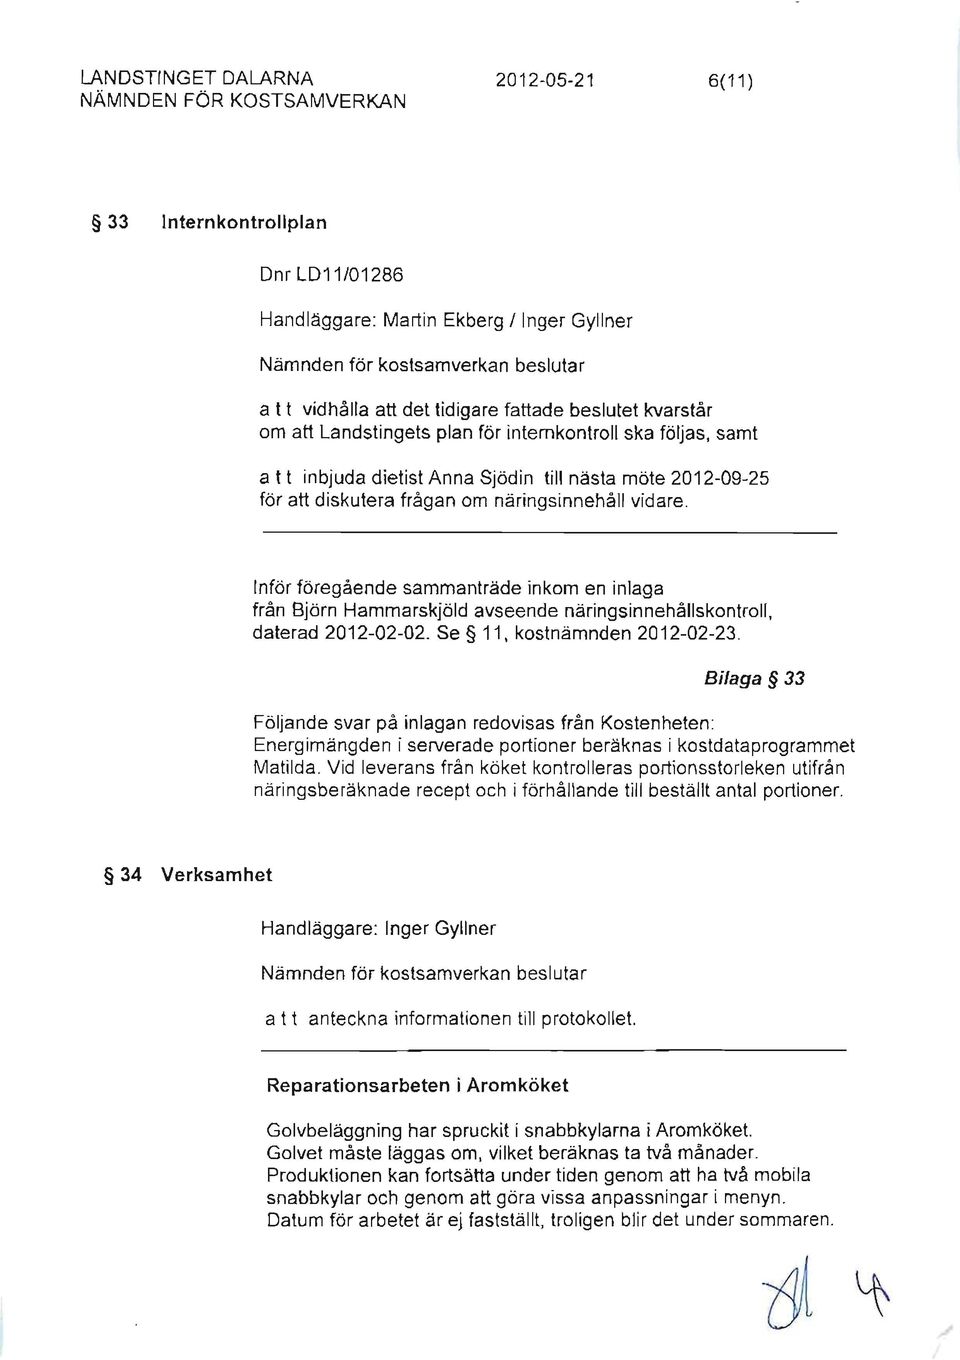 Inför föregående sammanträde inkom en inlaga från Björn Hammarskjöld avseende näringsinnehållskontroll, daterad 2012-02-02. Se 11, kostnämnden 2012-02-23.